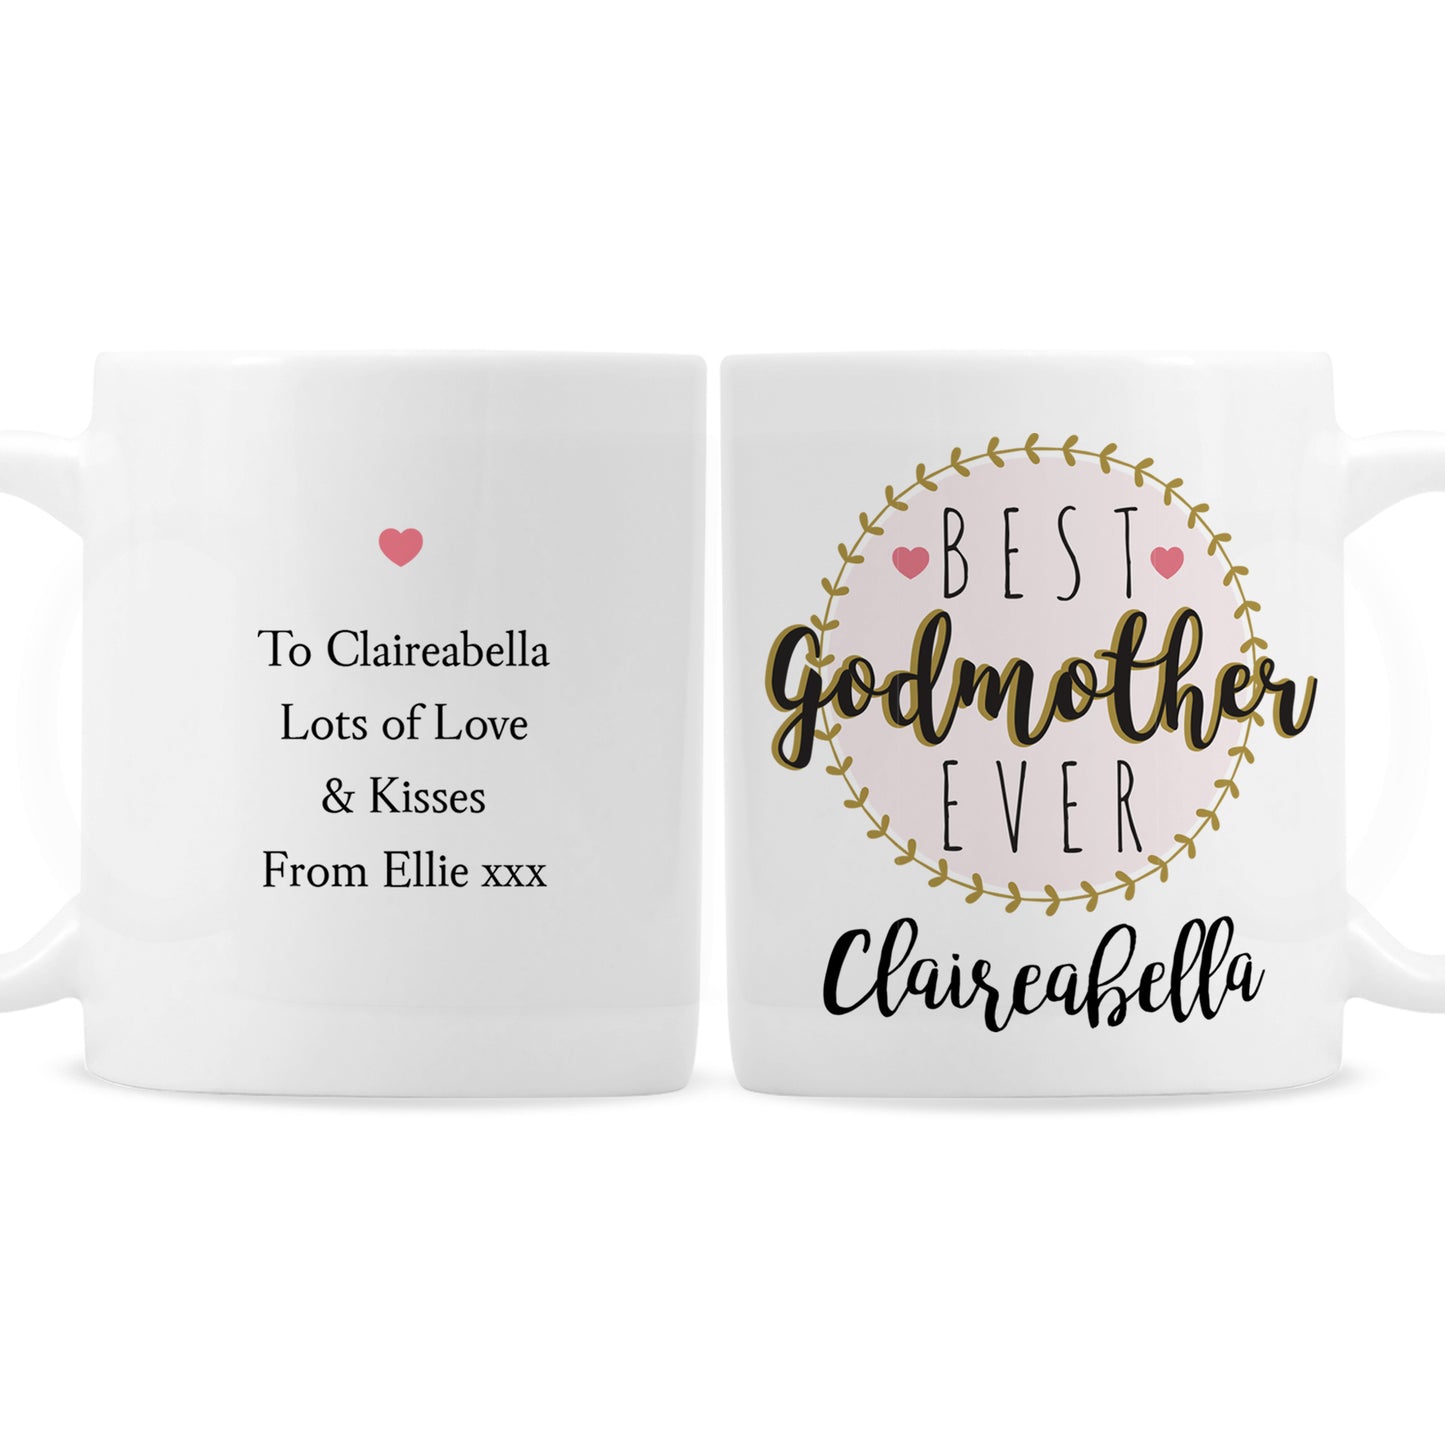 Personalised 'Best Godmother' Mug - Personalise It!